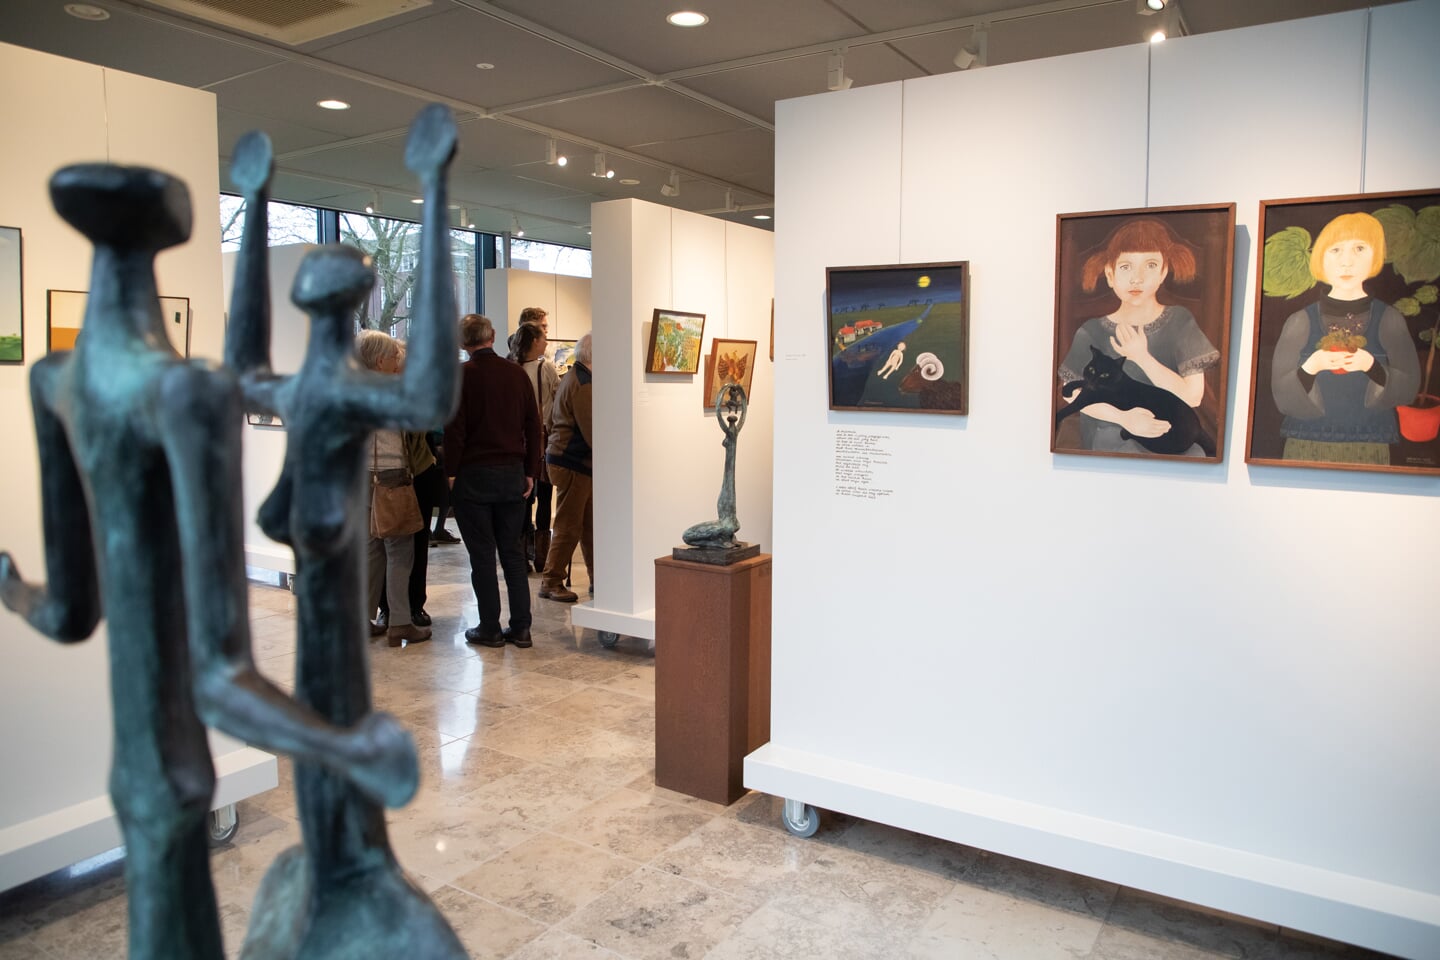 Els Coppens en Joep Coppens exposeren in museum Jan Heestershuis